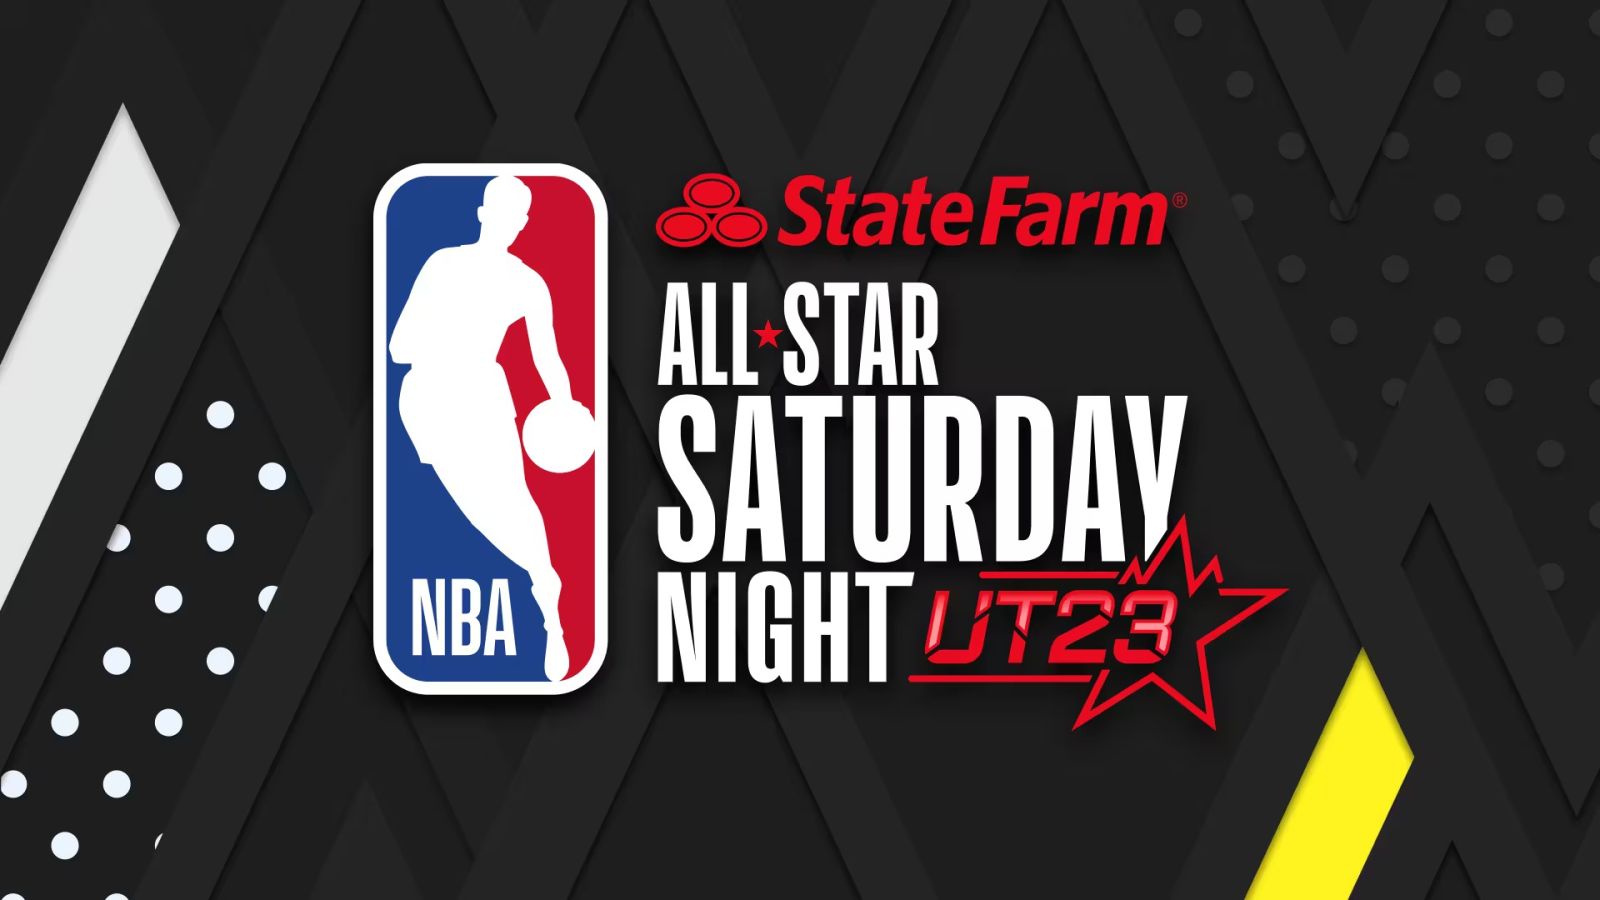 All Star Saturday Night - Feb 18, 2023